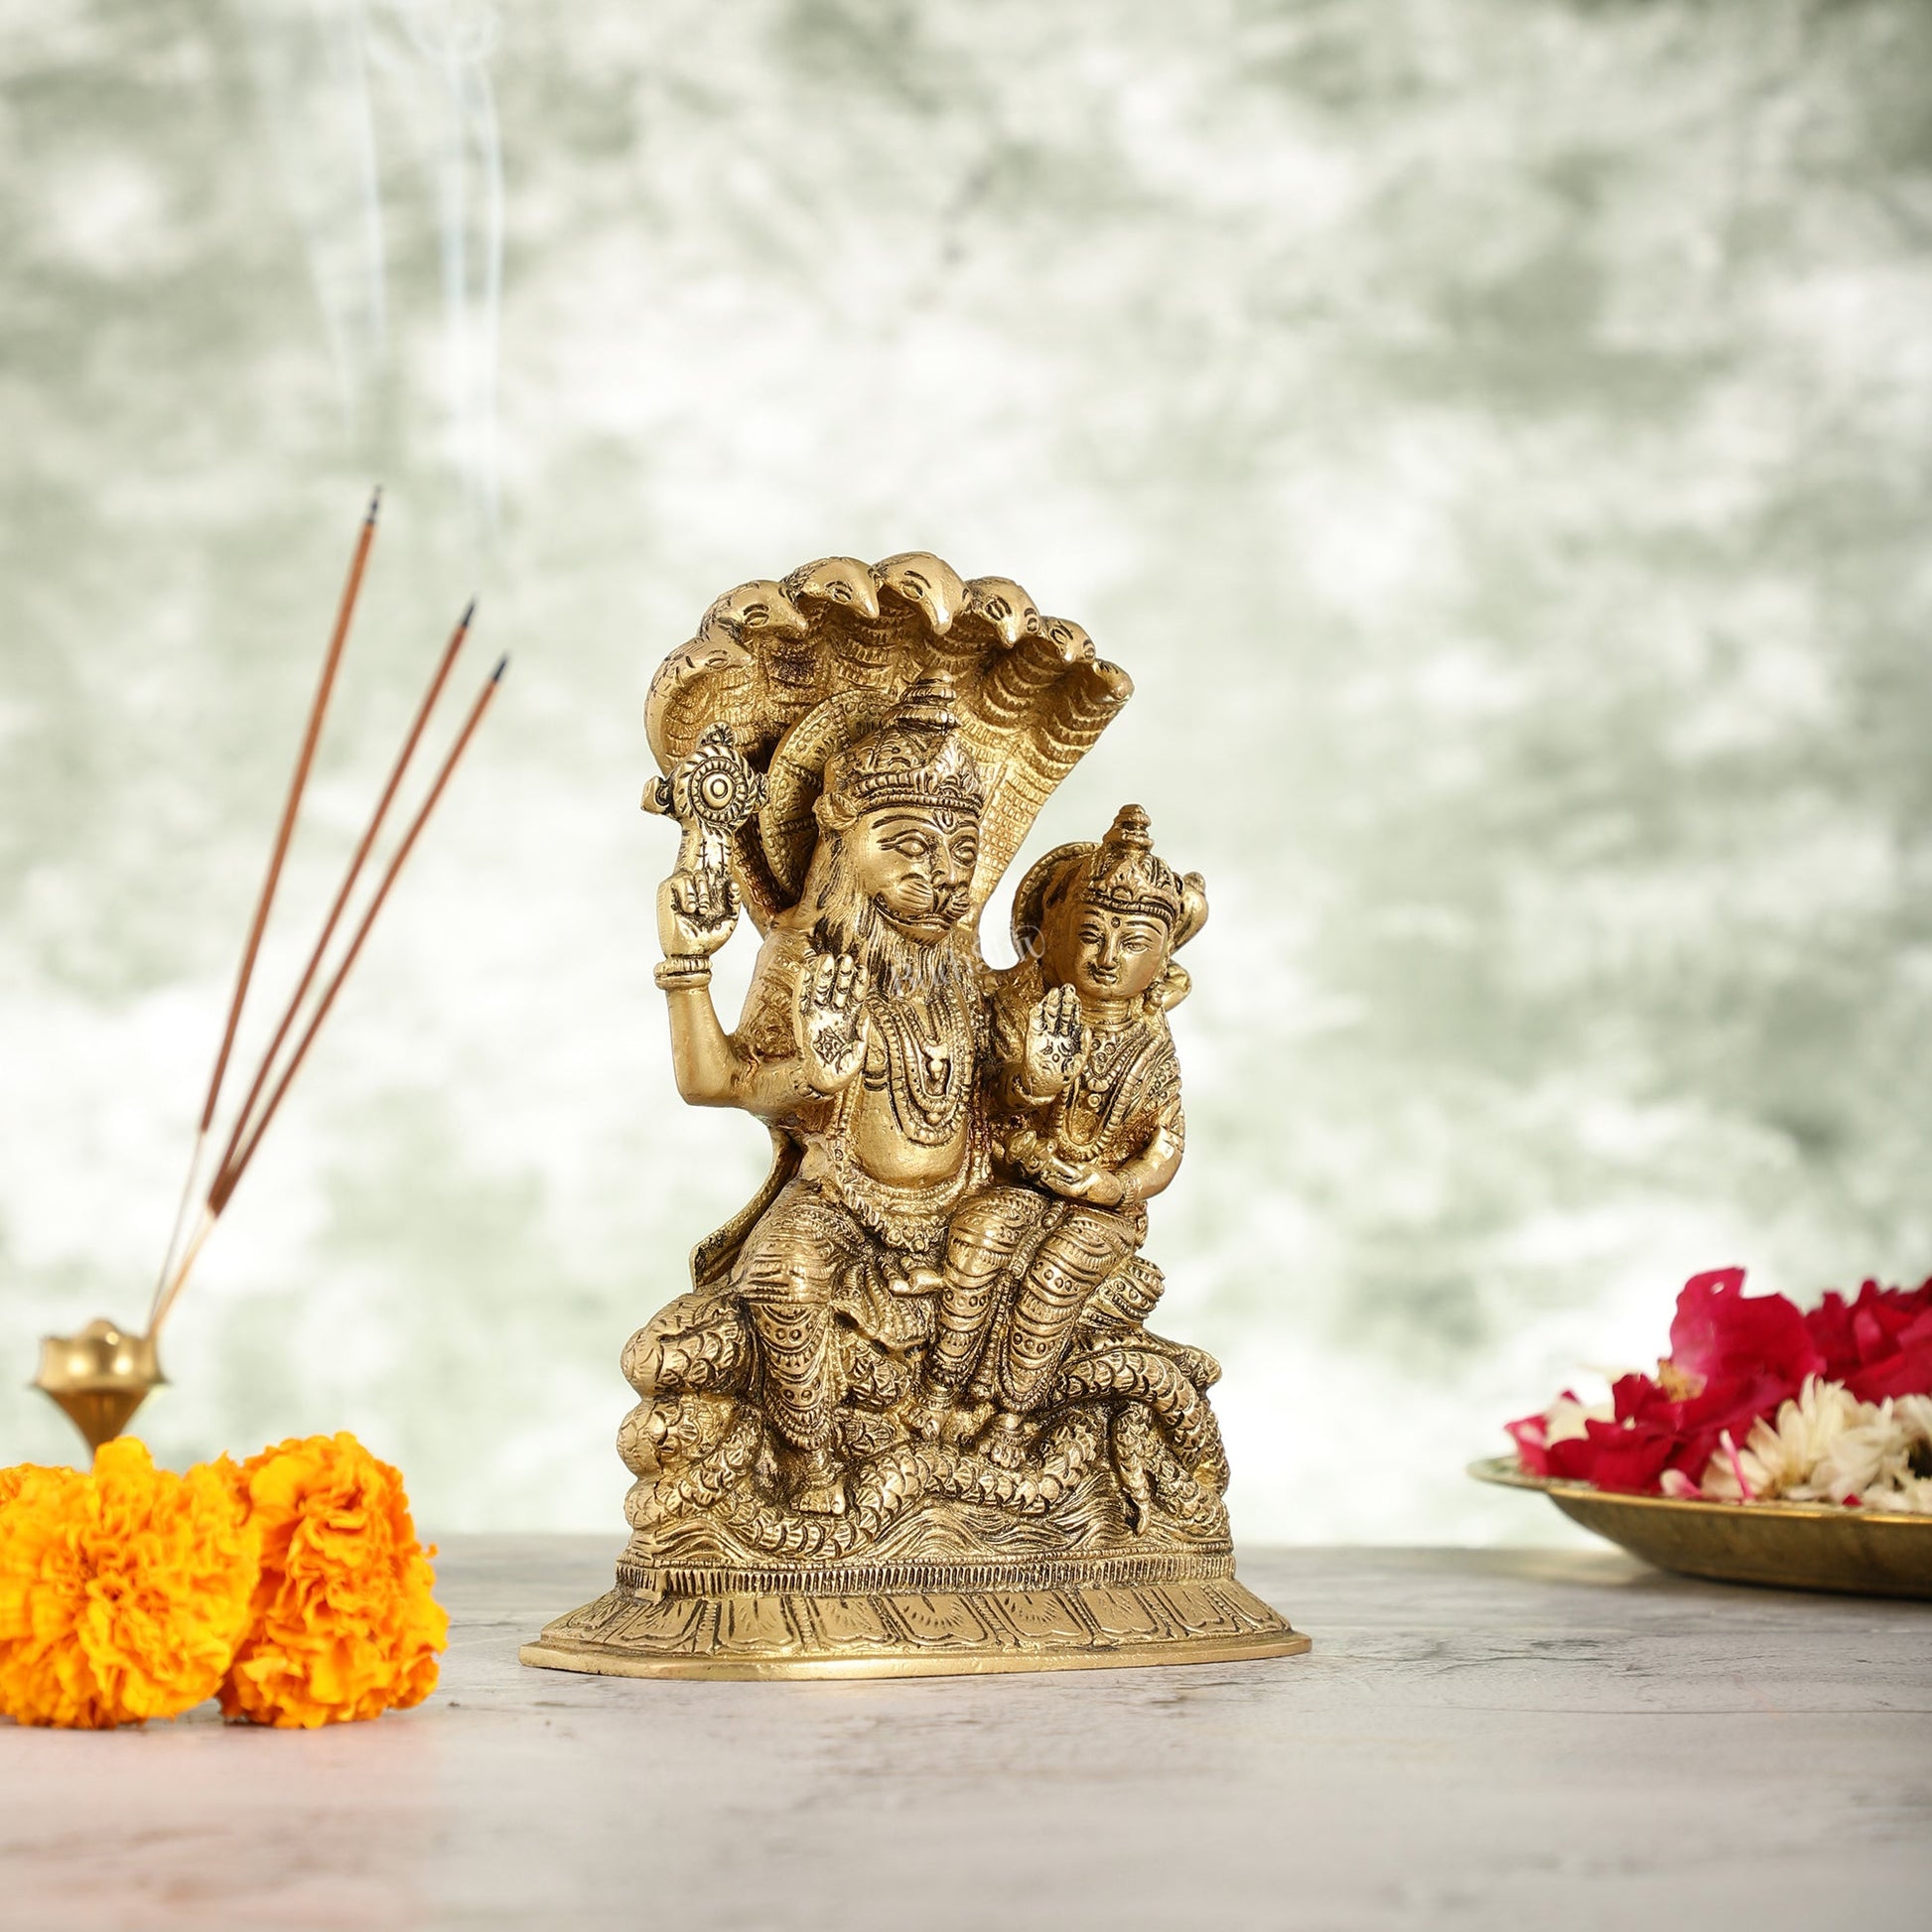 Superfine Brass Narsimha Lakshmi Idol Statue - 7.5 inch - Budhshiv.com